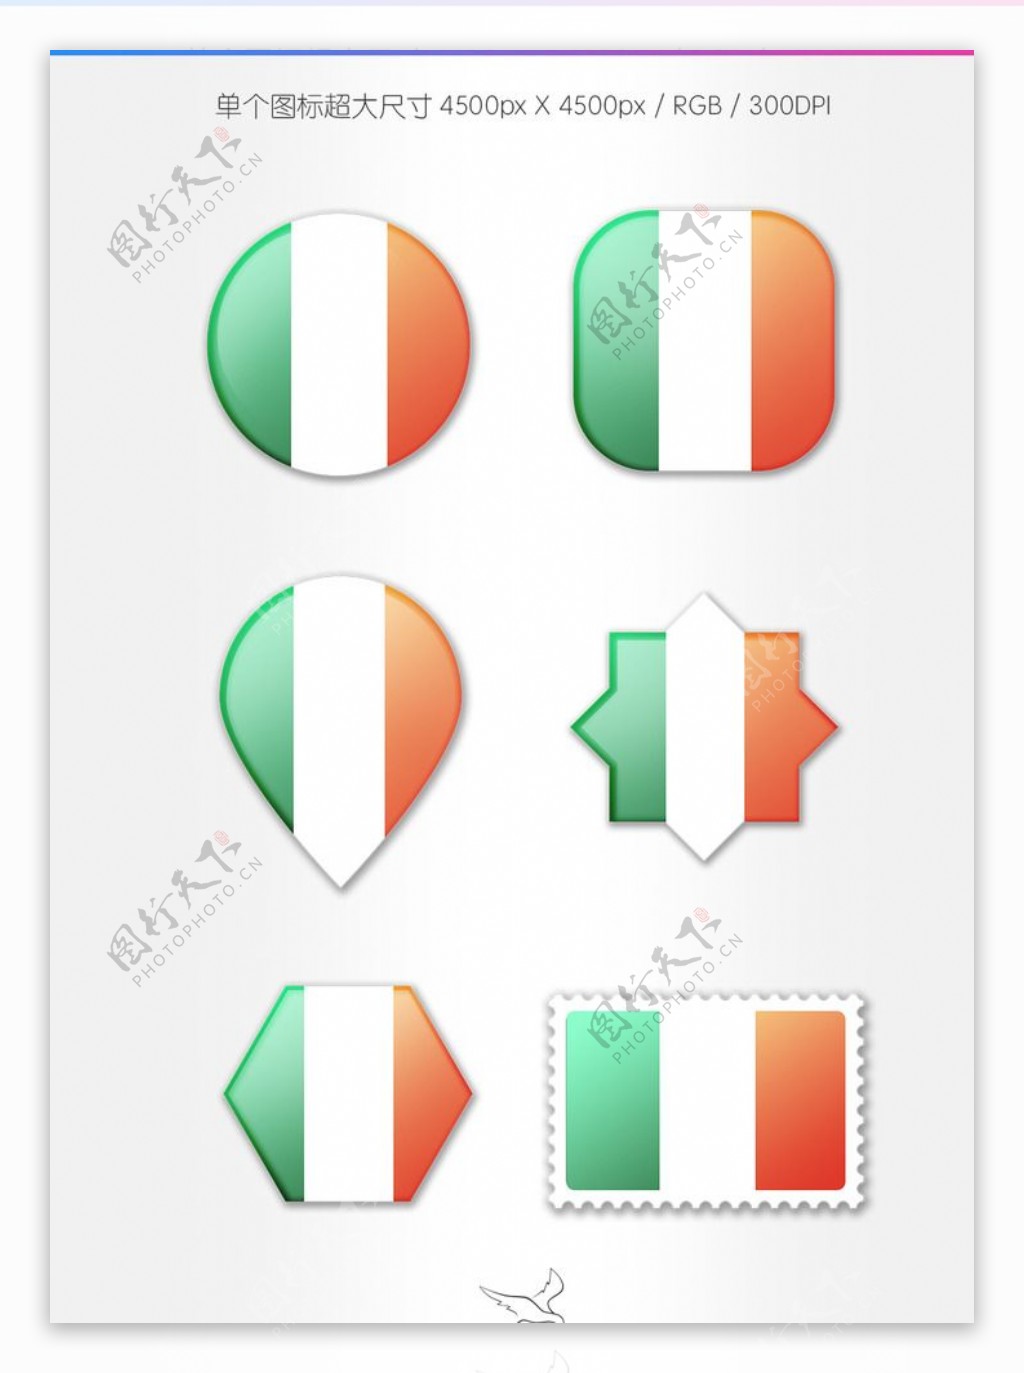 爱尔兰国旗图标